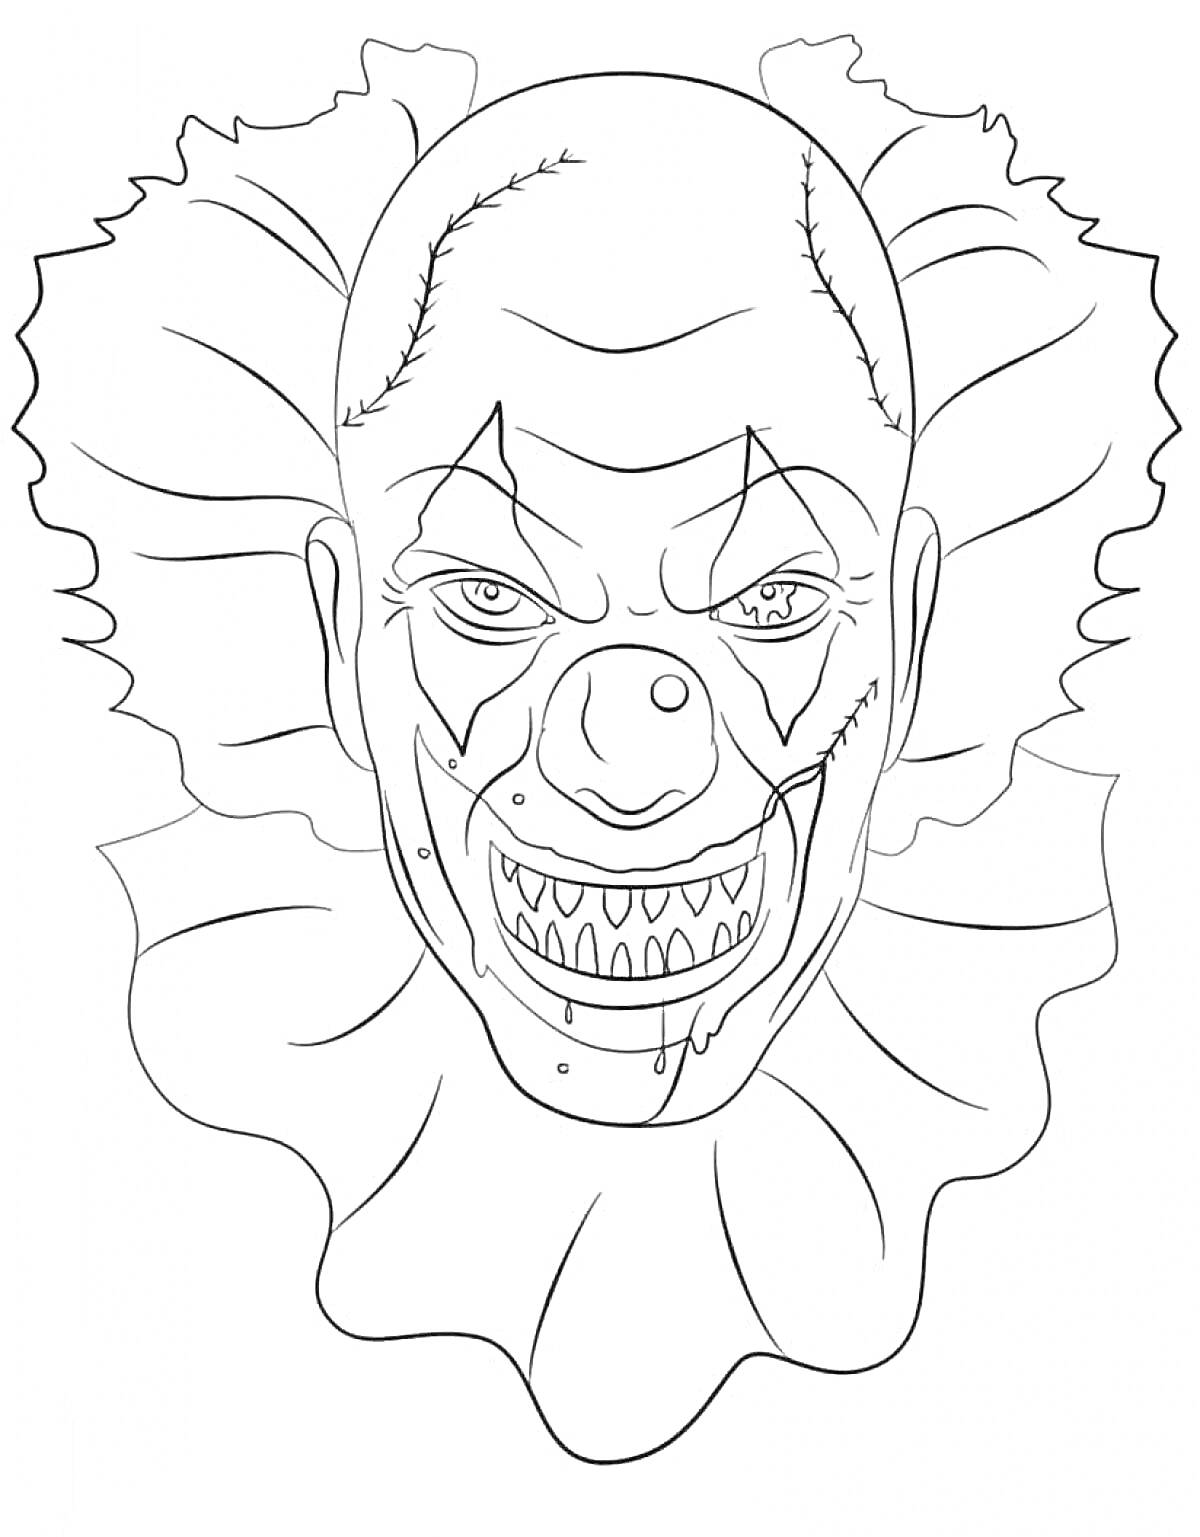 Раскраска Лицо клоуна Пеннивайза с устрашающей гримасой